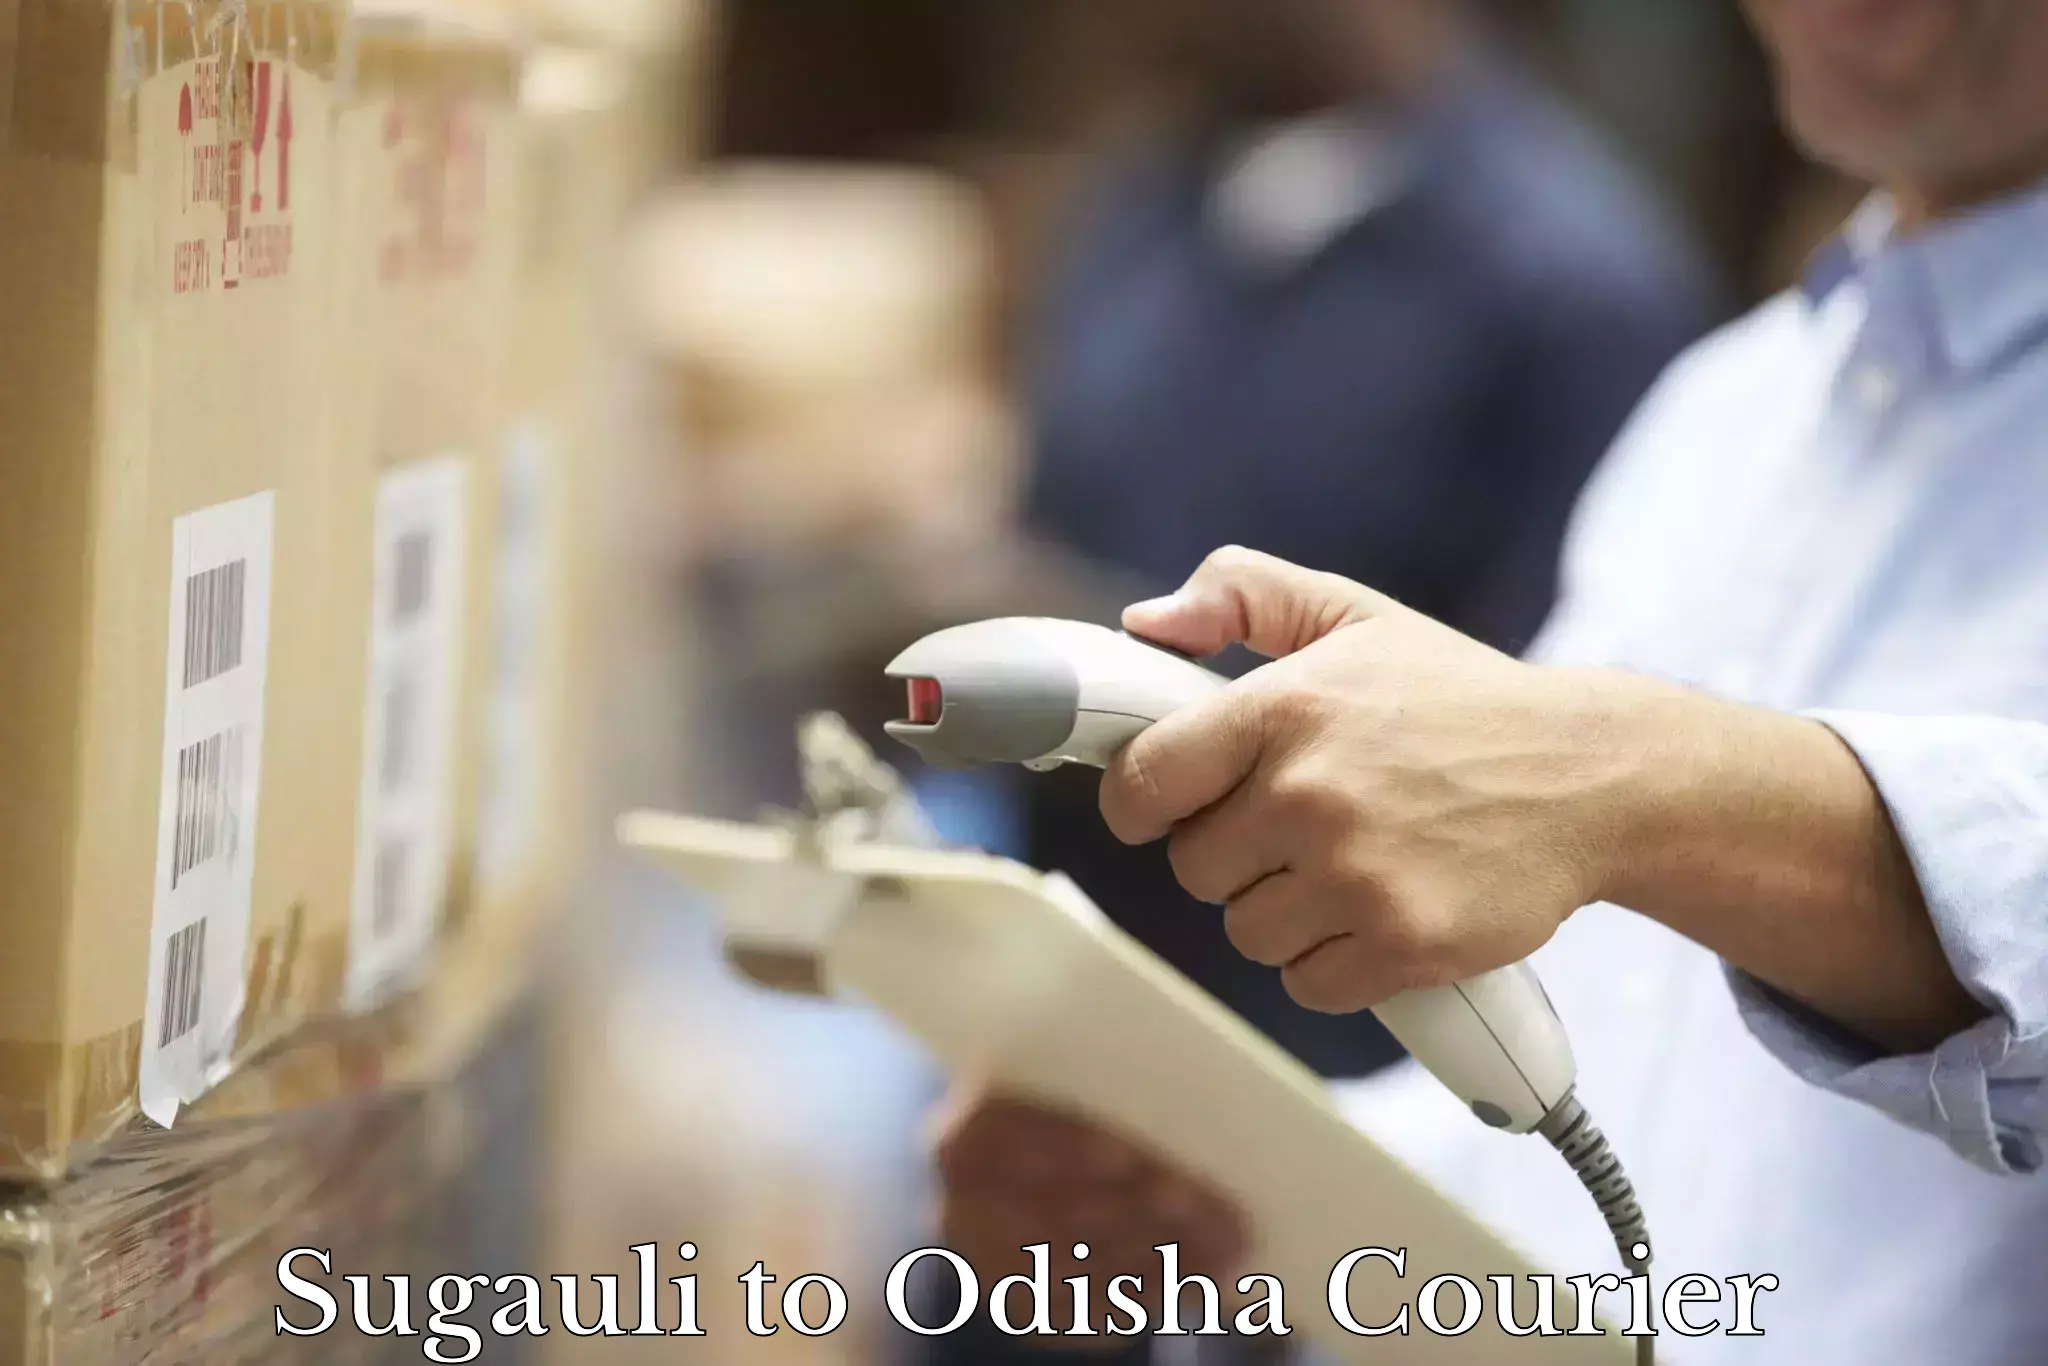 Customized delivery options Sugauli to Pottangi